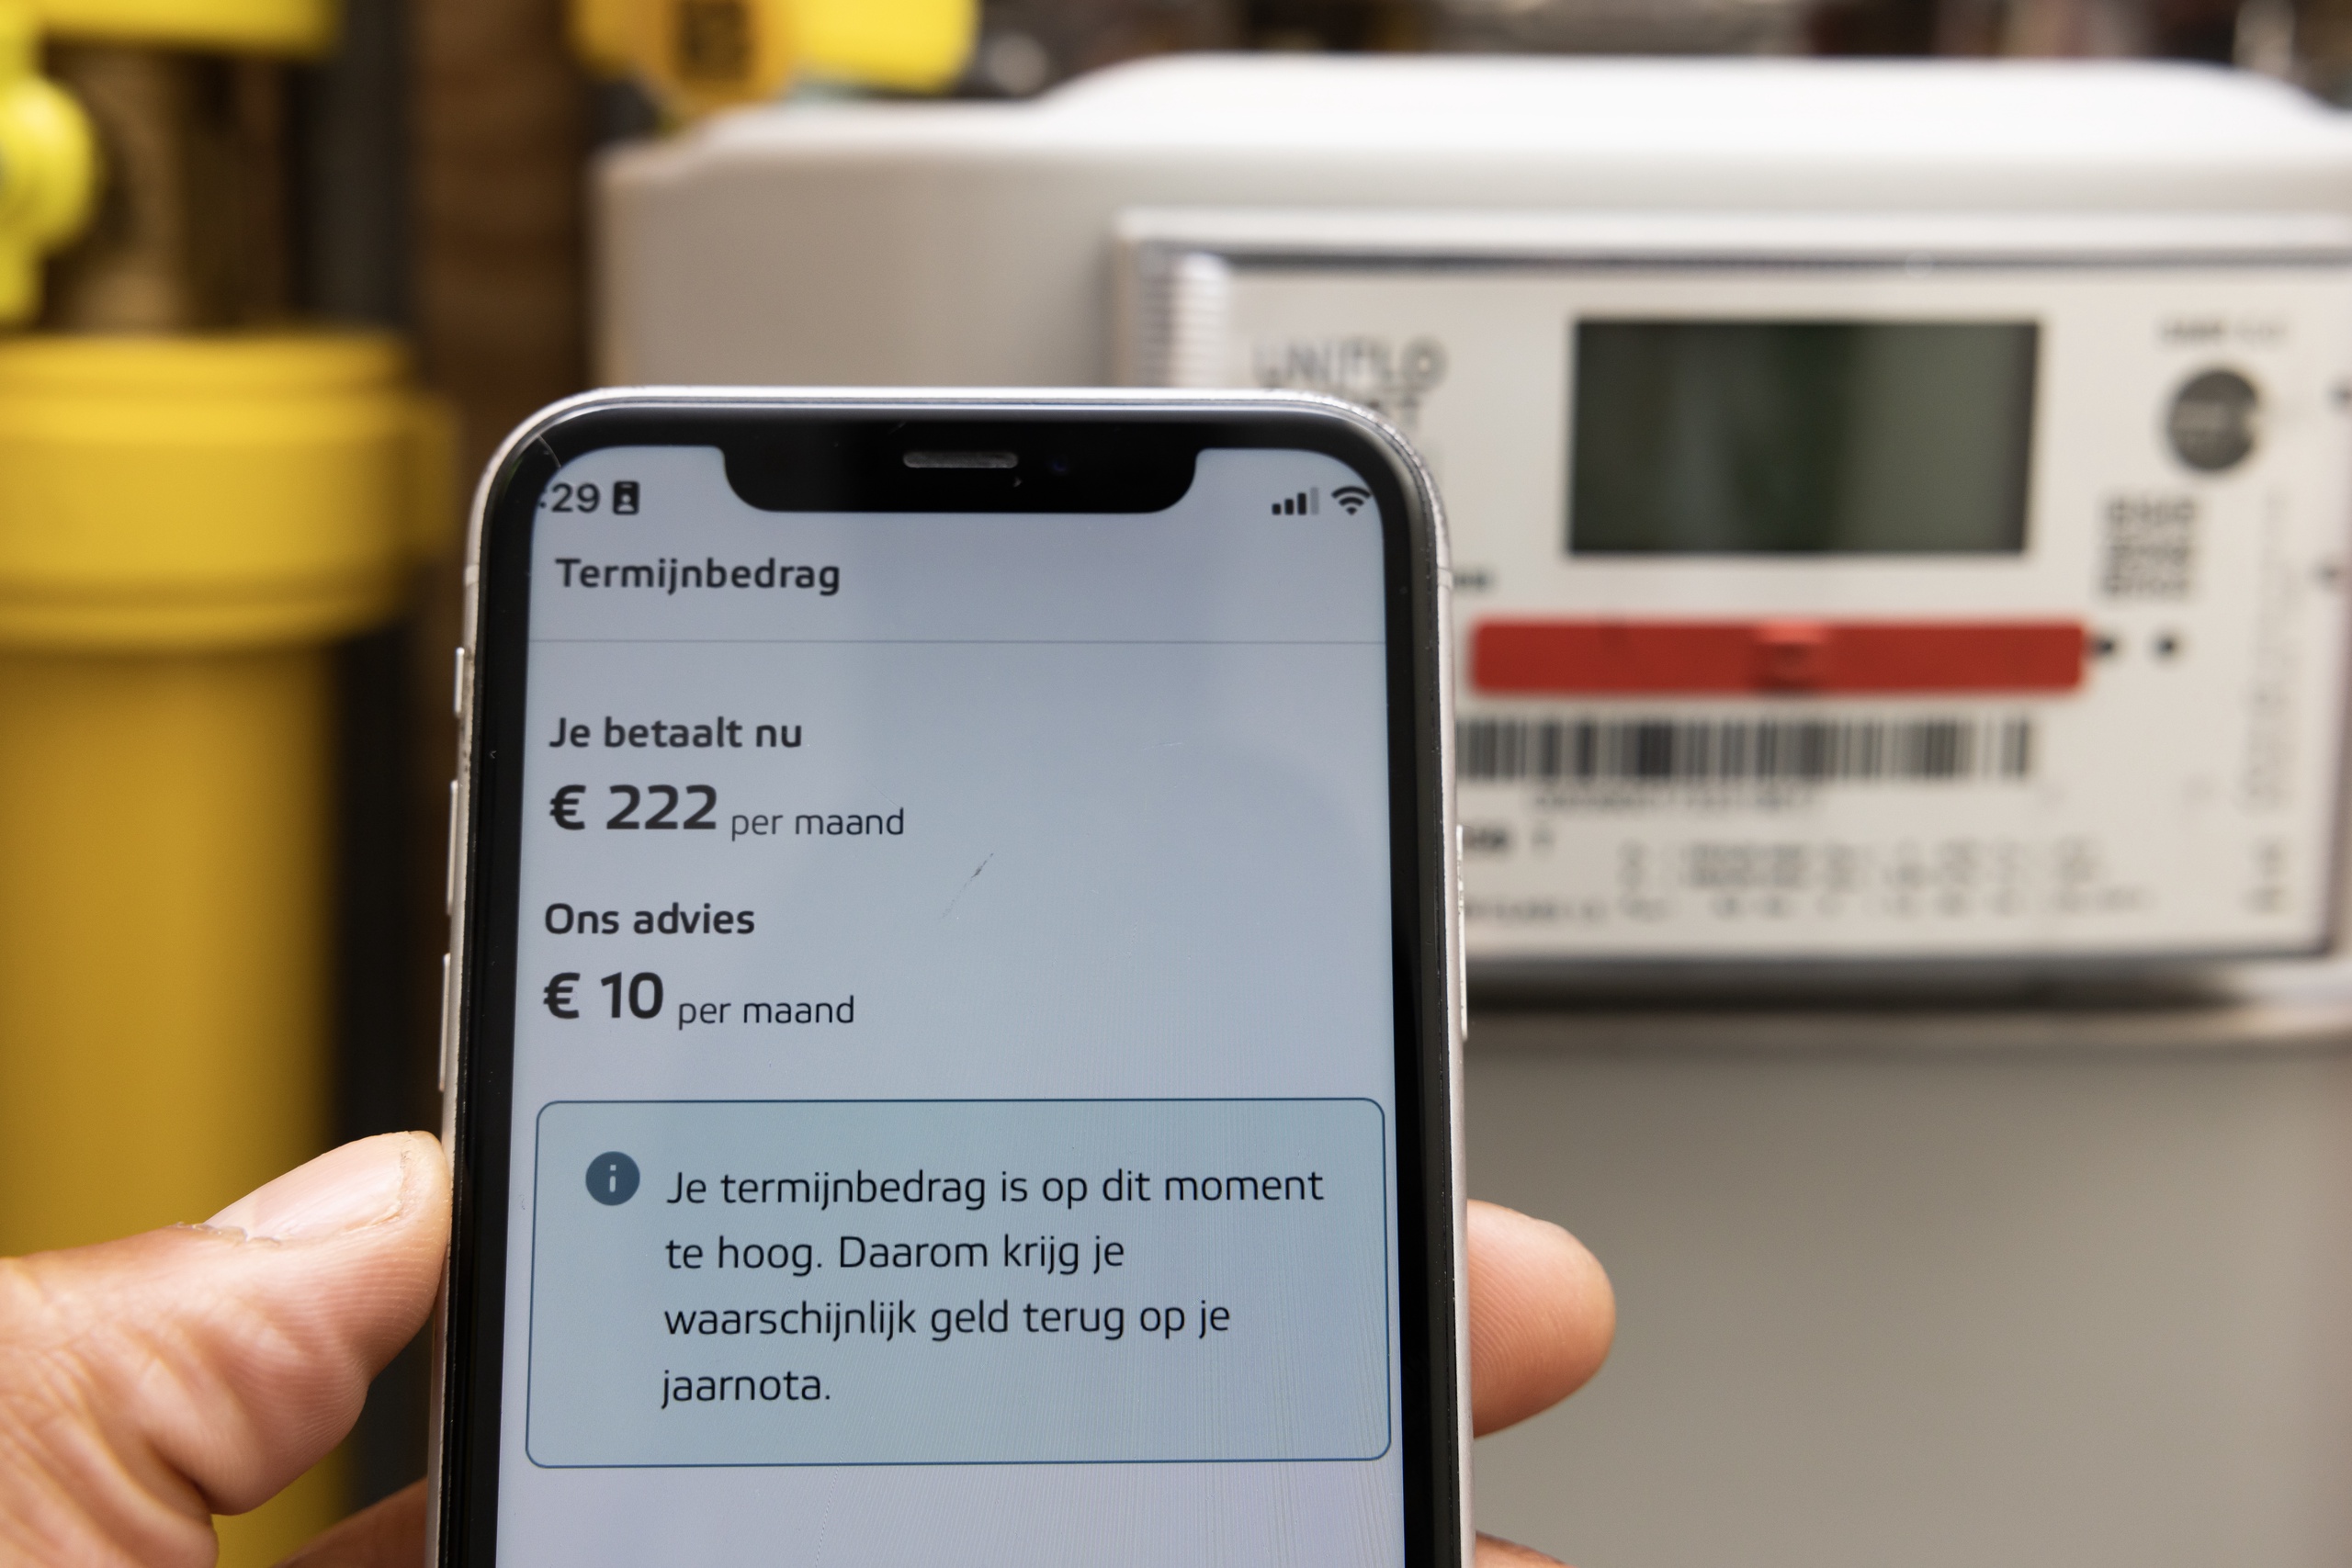 Nederlanders betalen maandelijks langzaam maar zeker steeds minder voor hun energie. Volgens een analyse van transactiedata door ING gaat het gemiddelde voorschotbedrag dat huishoudens elke maand kwijt zijn stap voor stap wat omlaag. Inmiddels ligt dit bedrag 30 euro onder de piek, blijkt uit de berekeningen.